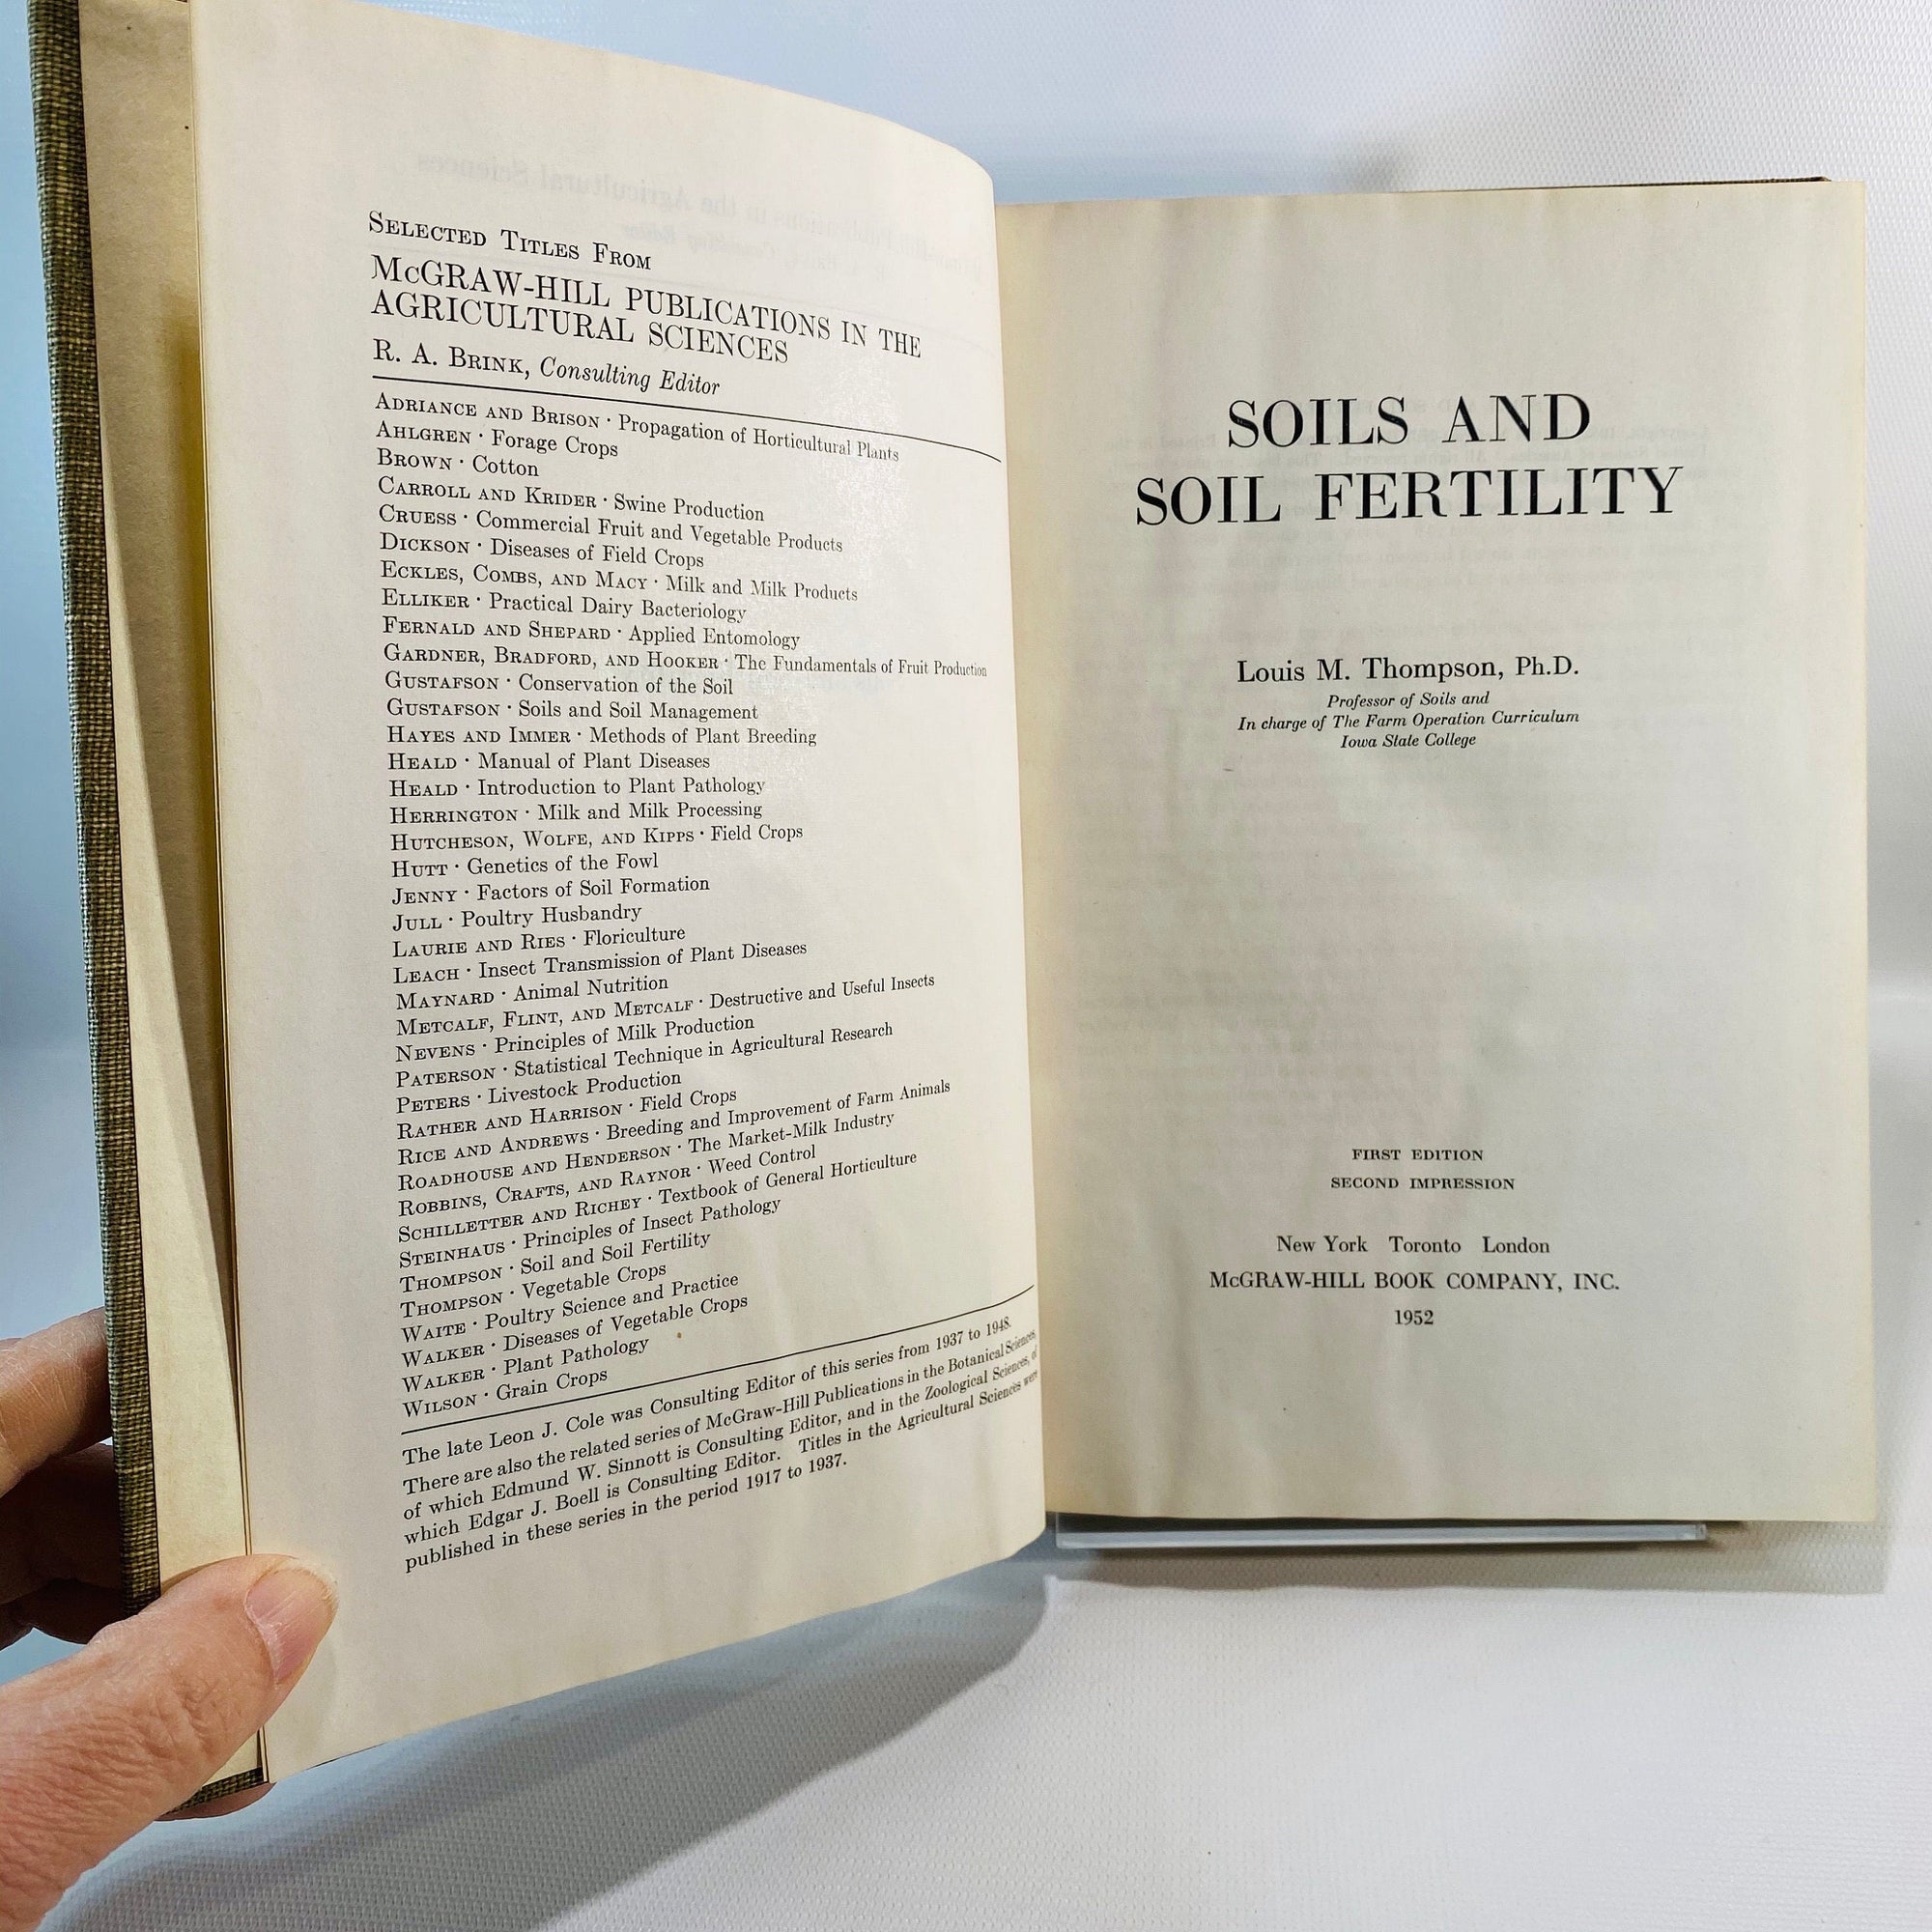 Soils and Soil Fertility by Louis Thompson 1952